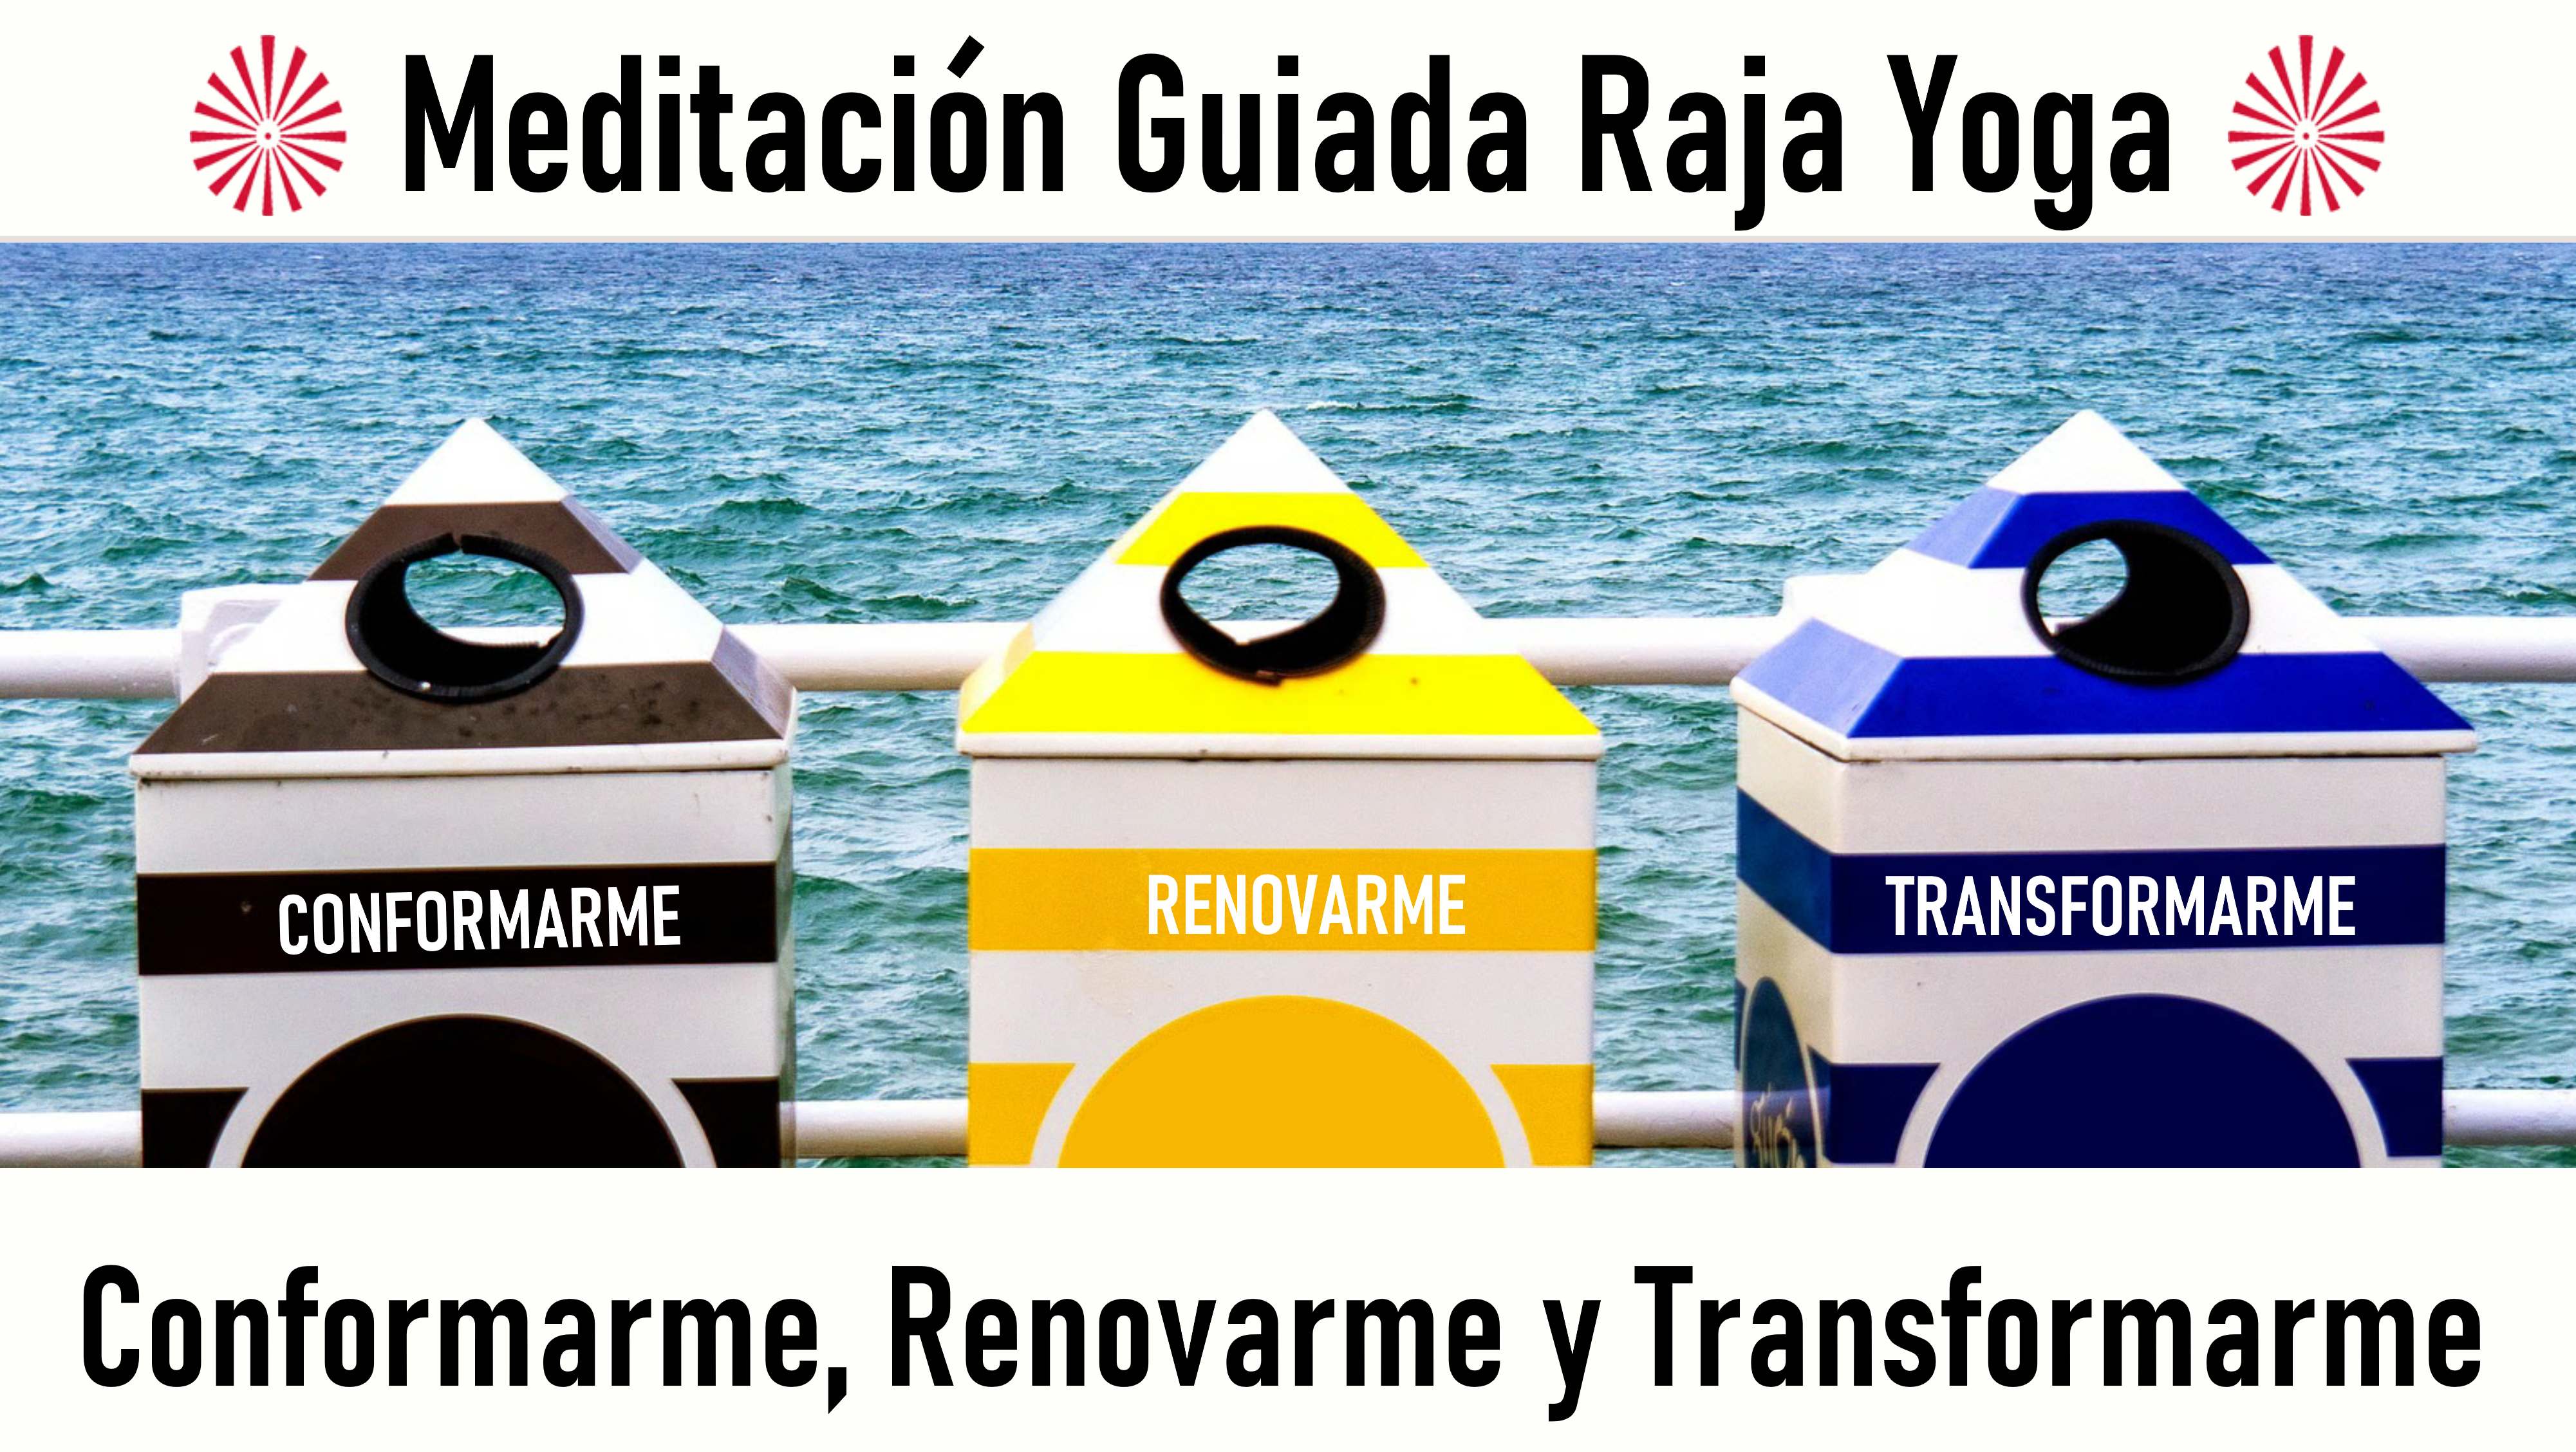 Meditación Raja Yoga: Conformarme, renovarme y transformarme (20 Agosto 2020) On-line desde Barcelona